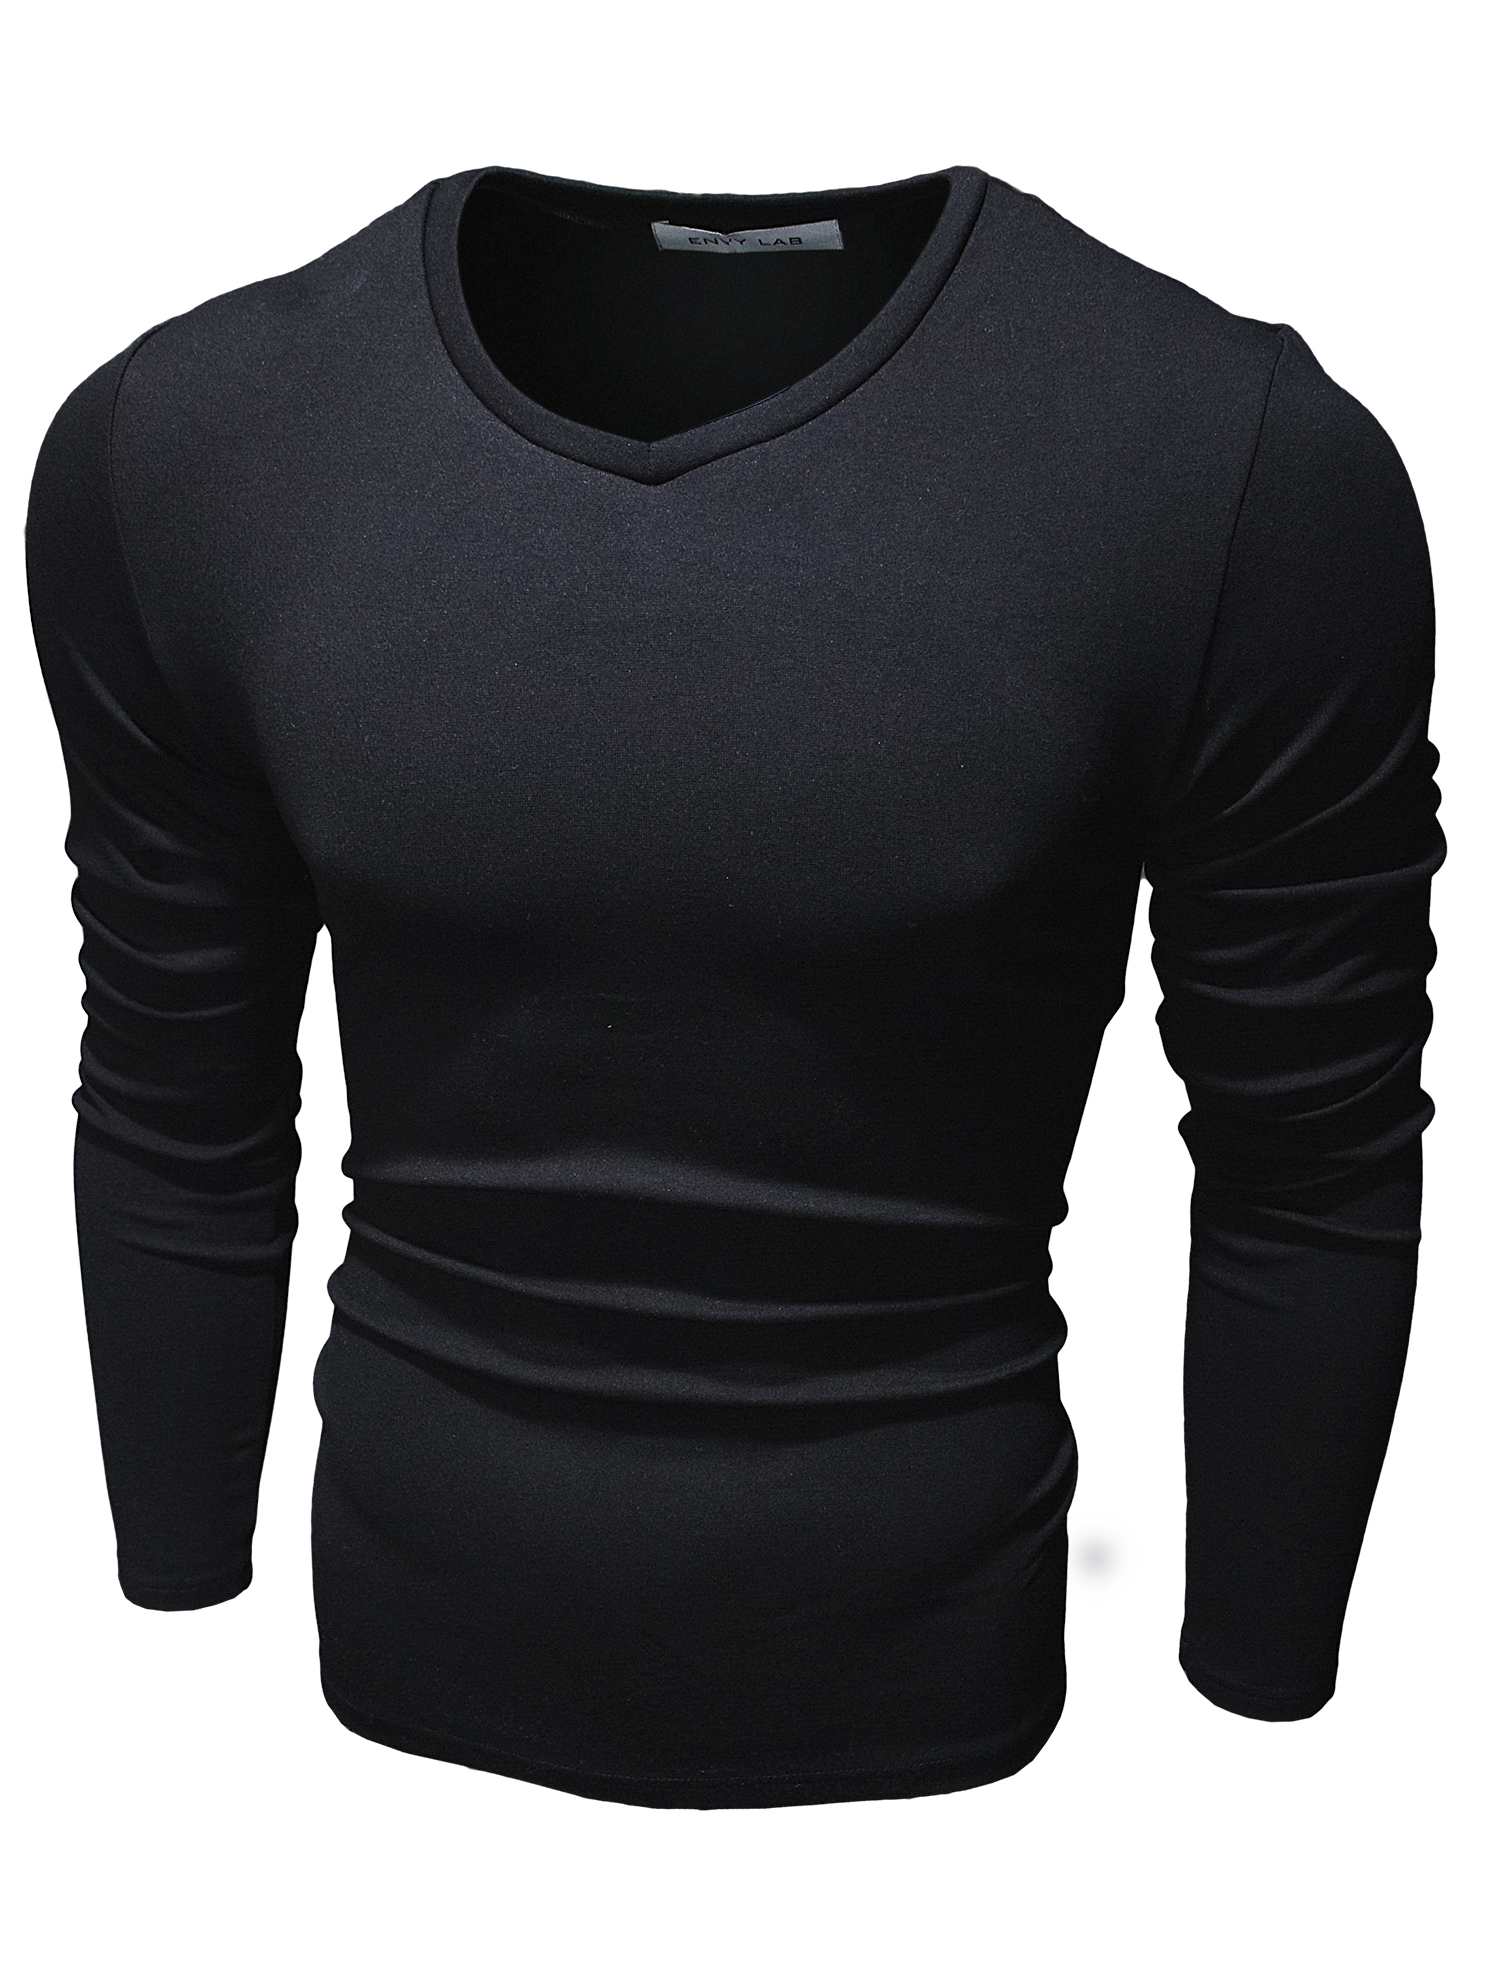 картинка товара пуловер v-black 2 в магазине Envy LAB